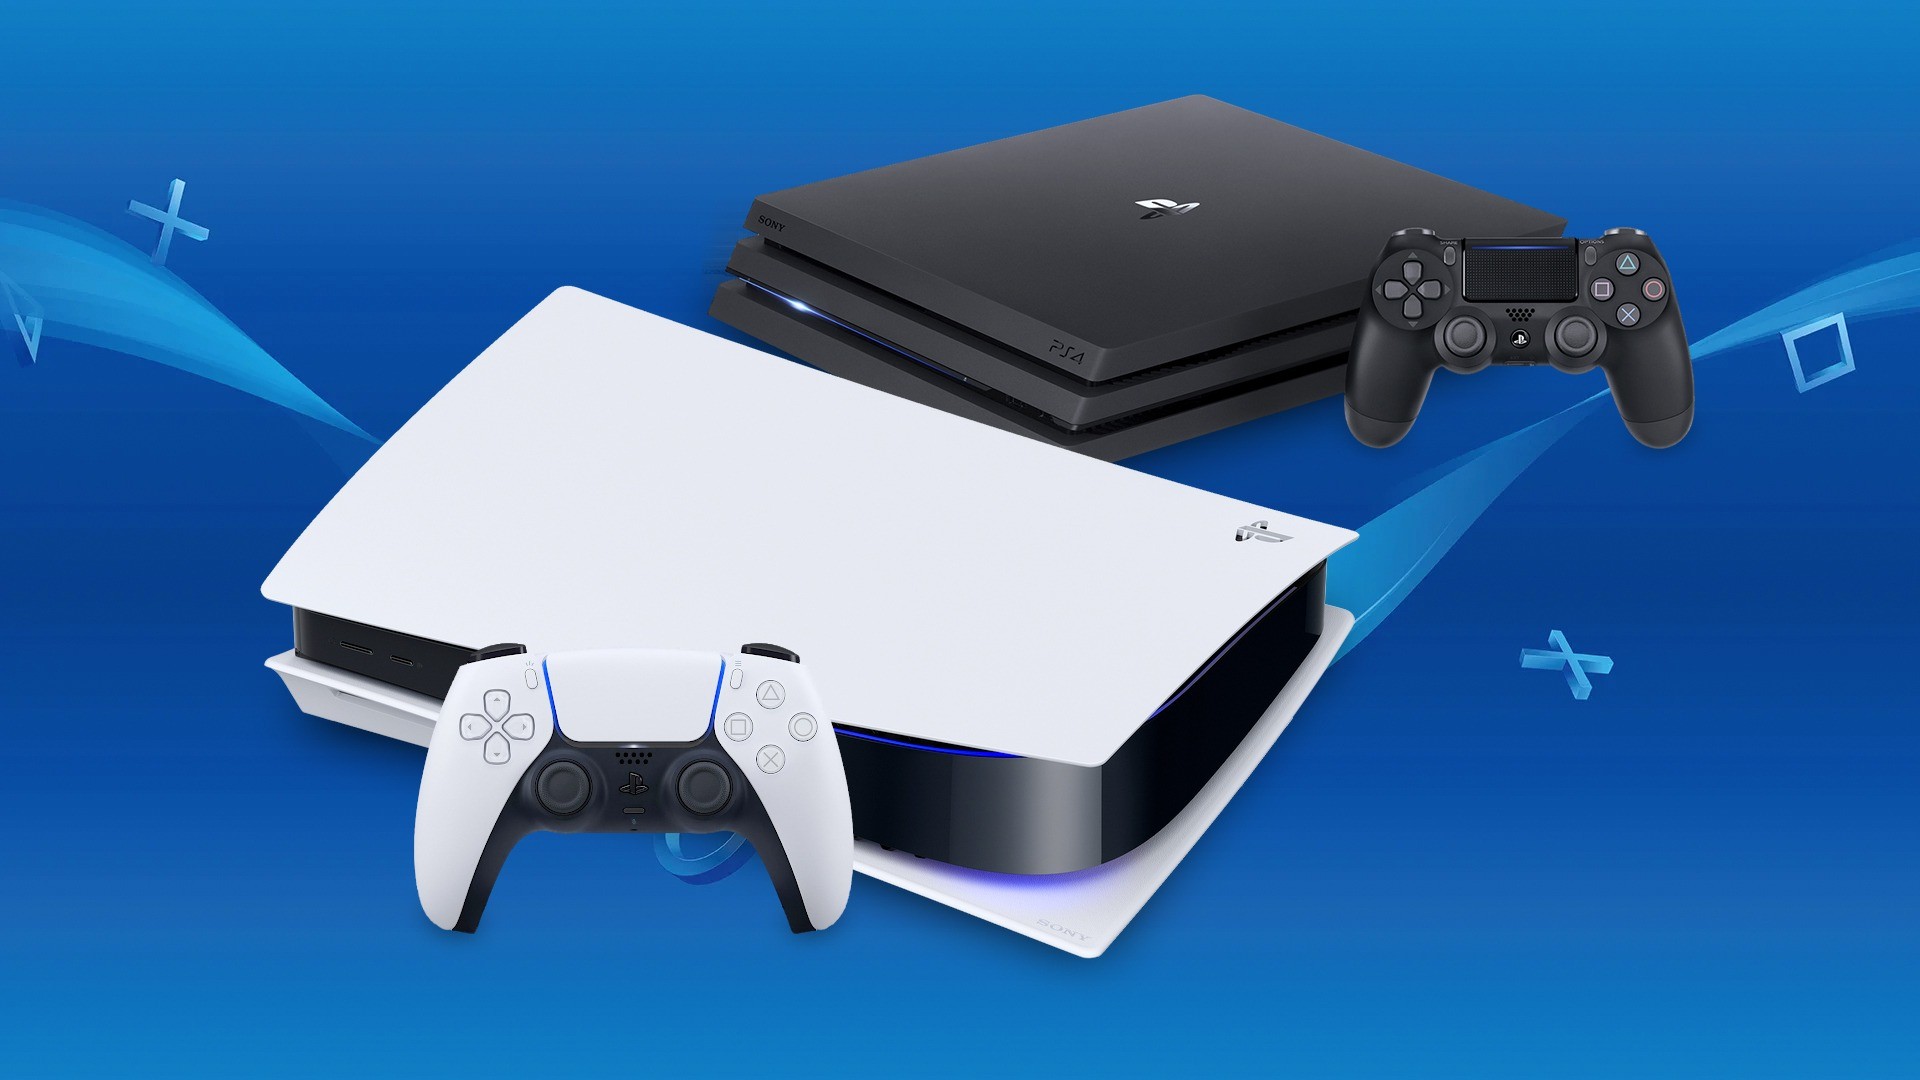 Fim do PS4? Sony deixa de atualizar as vendas do console - Olhar Digital